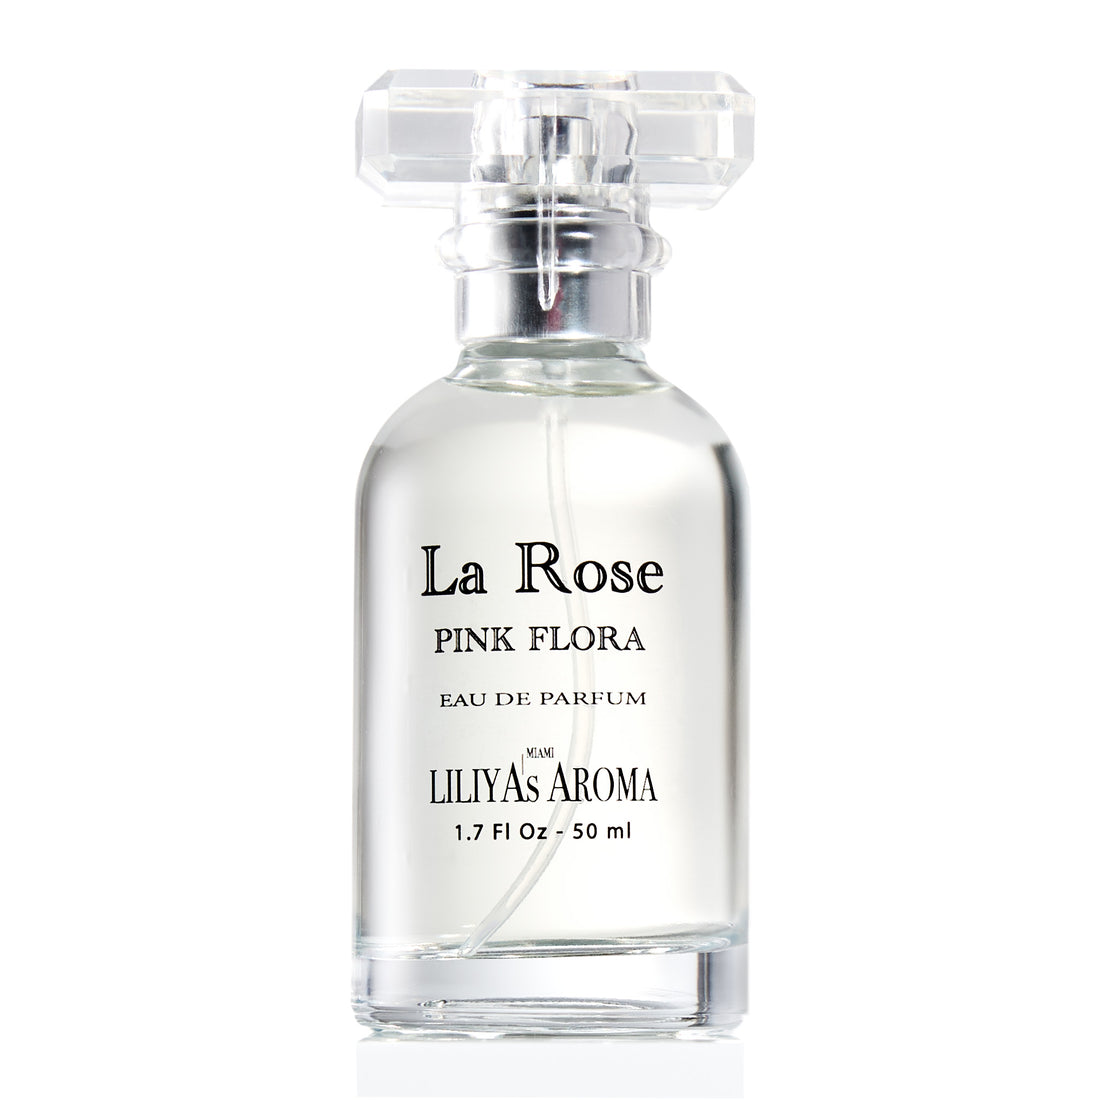 La Rose Eau De Parfum 1.7 Fl Oz